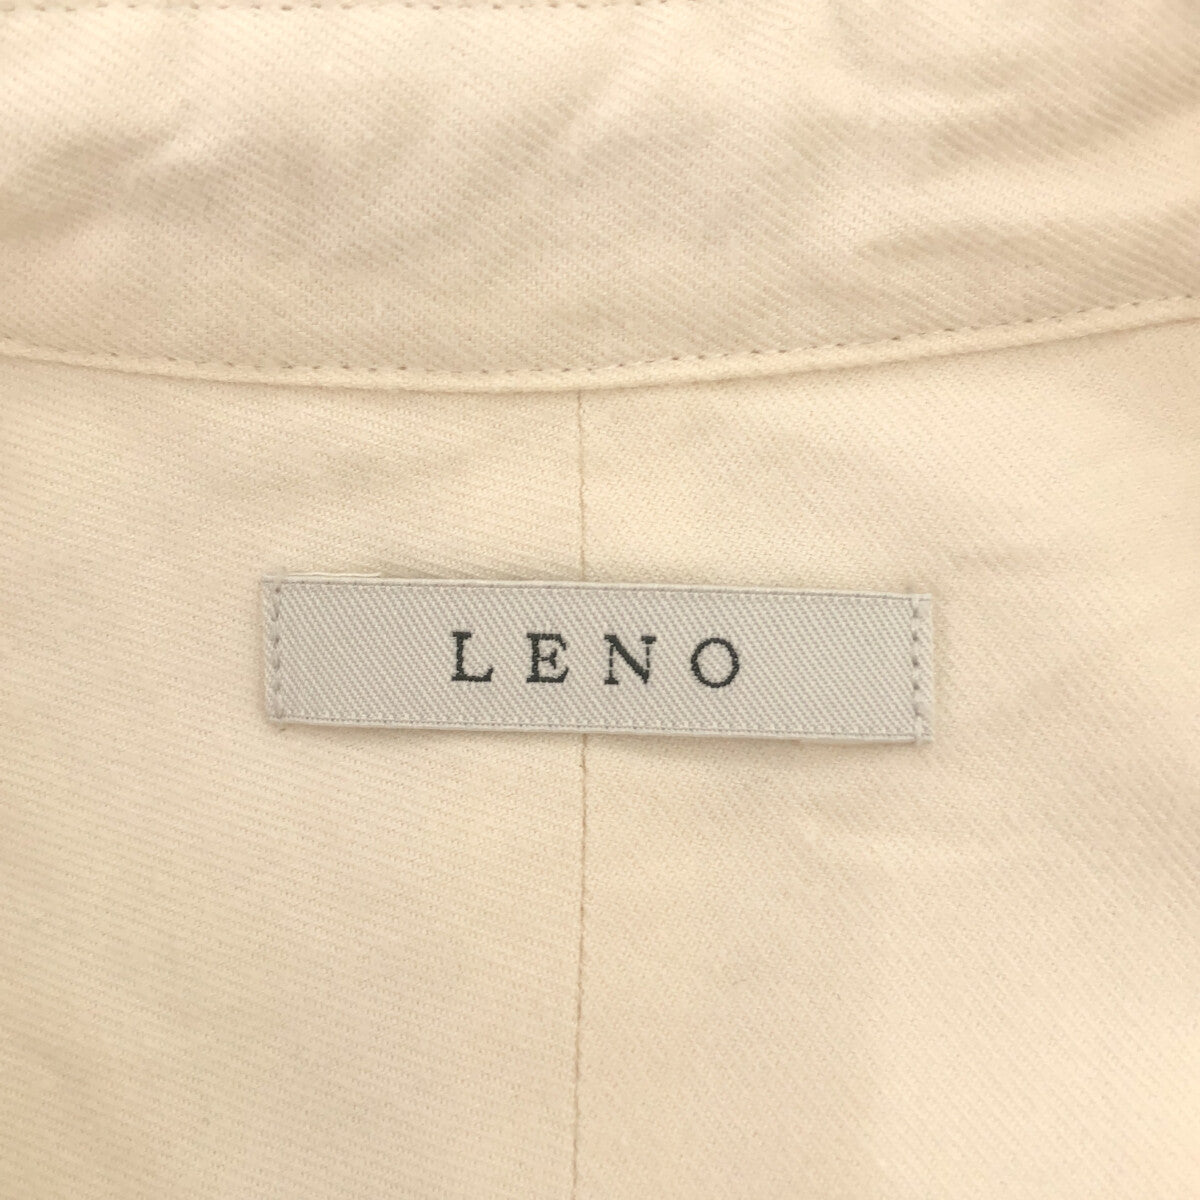 LENO / リノ | Pull Over Dress シャツワンピース | 0 | レディース